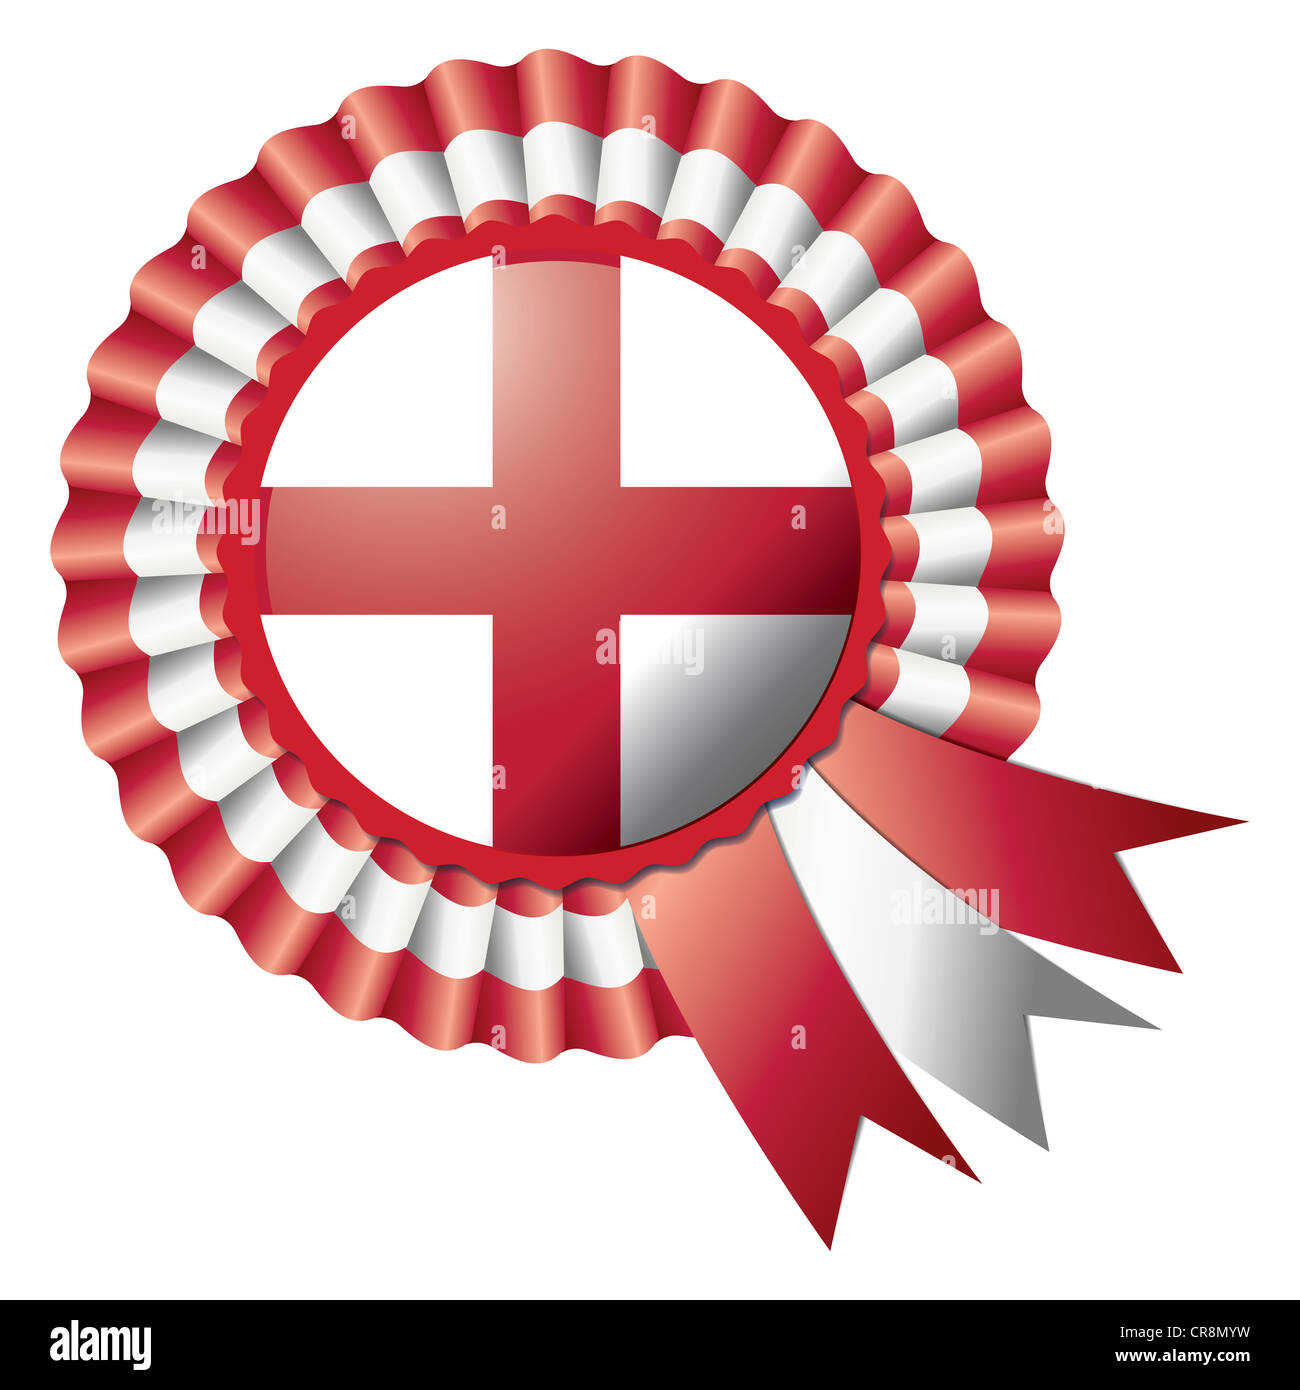 Detailed rosette flag of England, illustration Stock Photo